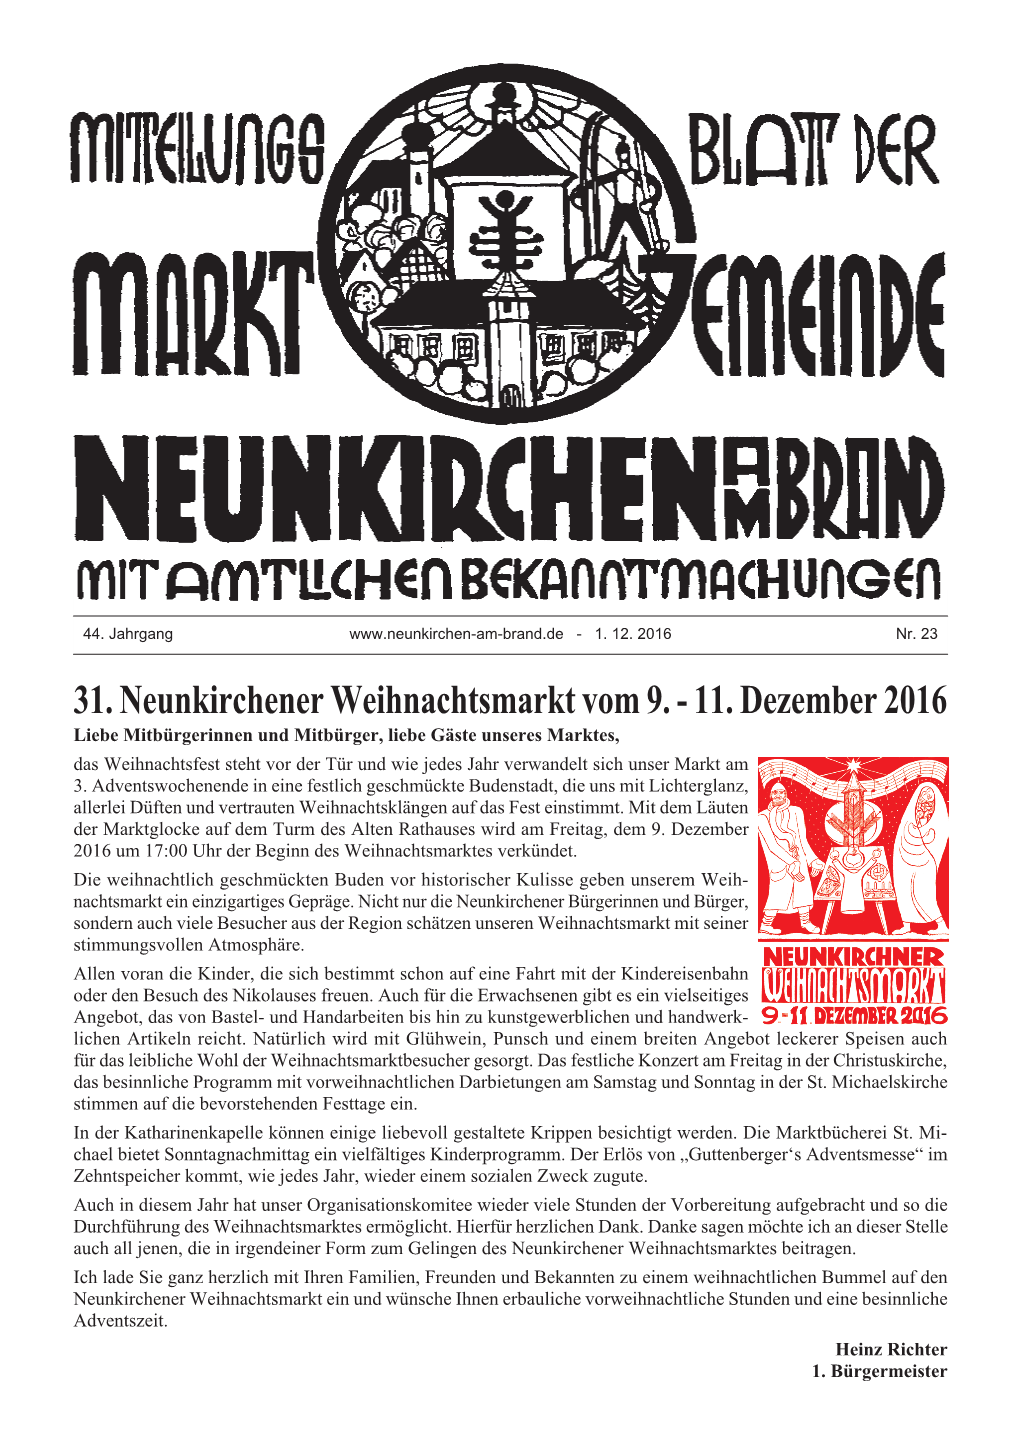 31. Neunkirchener Weihnachtsmarkt Vom 9. - 11